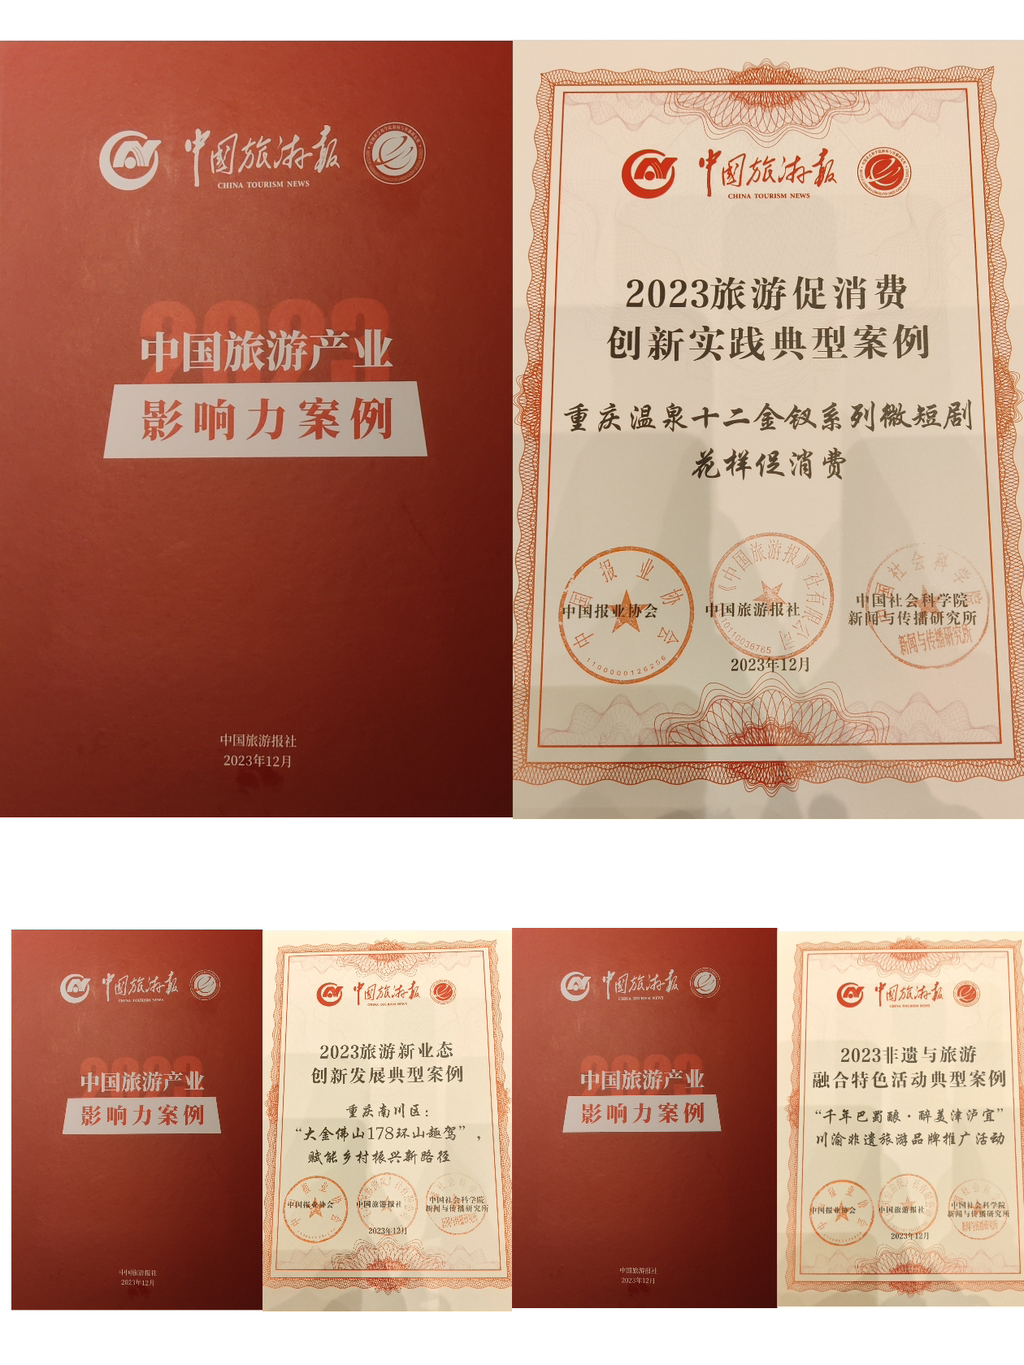 重庆荣获多个奖项。重庆市文化旅游委供图